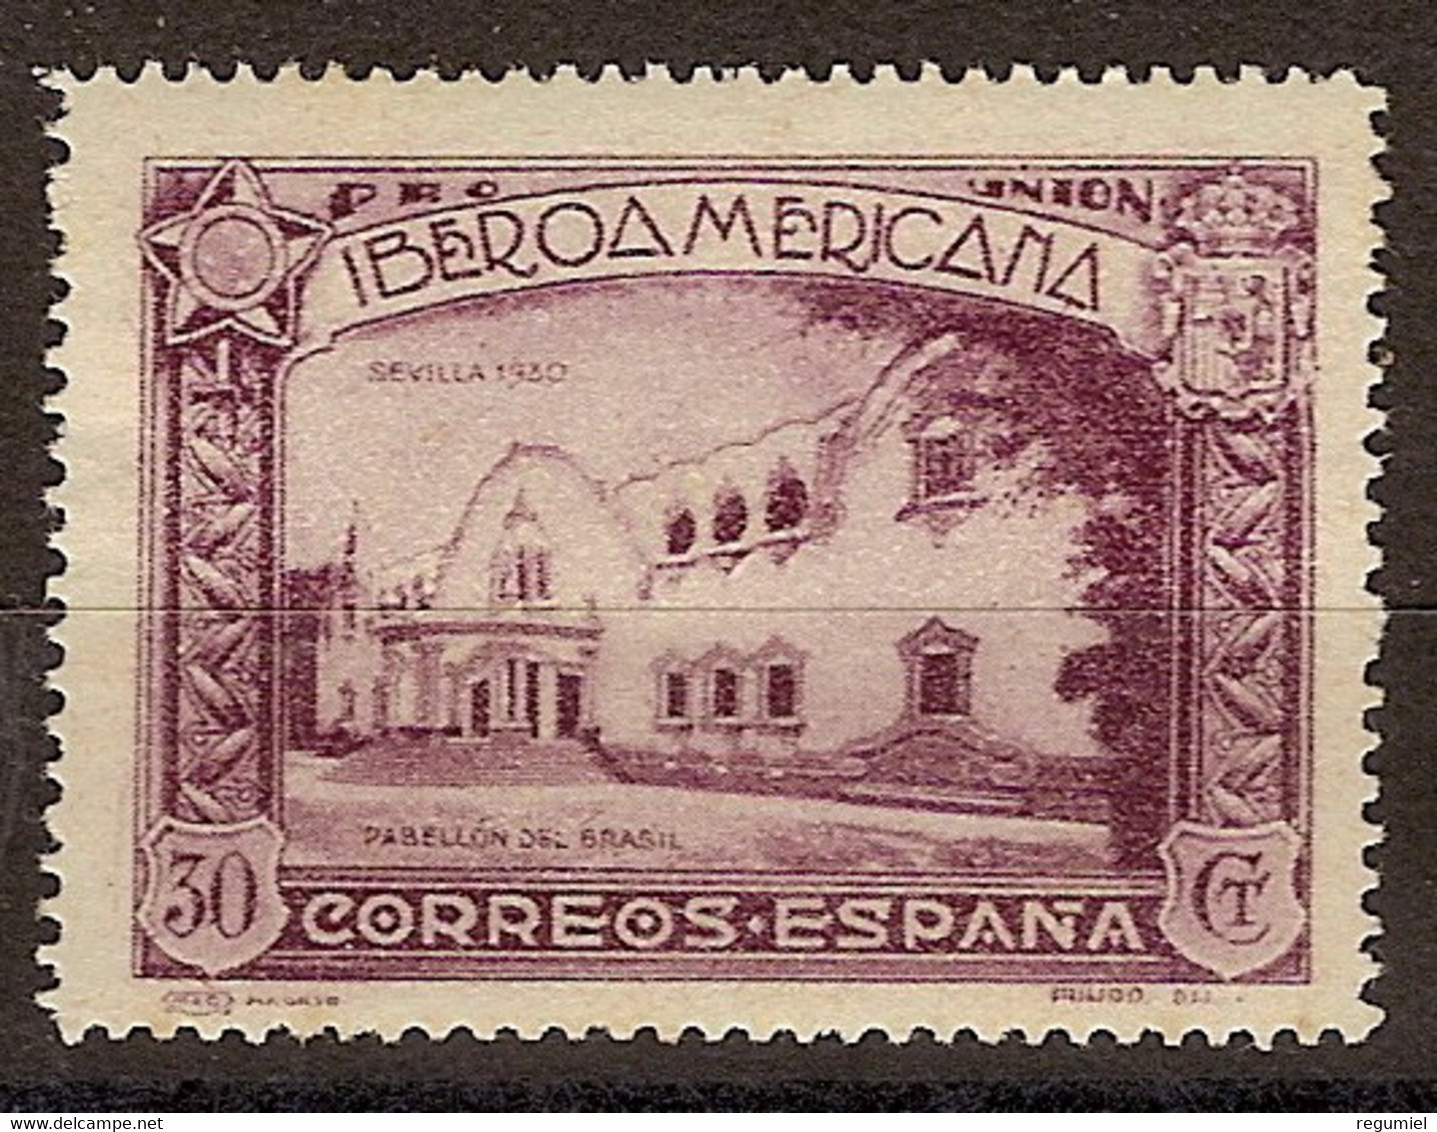 España 0574 ** Iberoamericana. 1930 - Nuevos